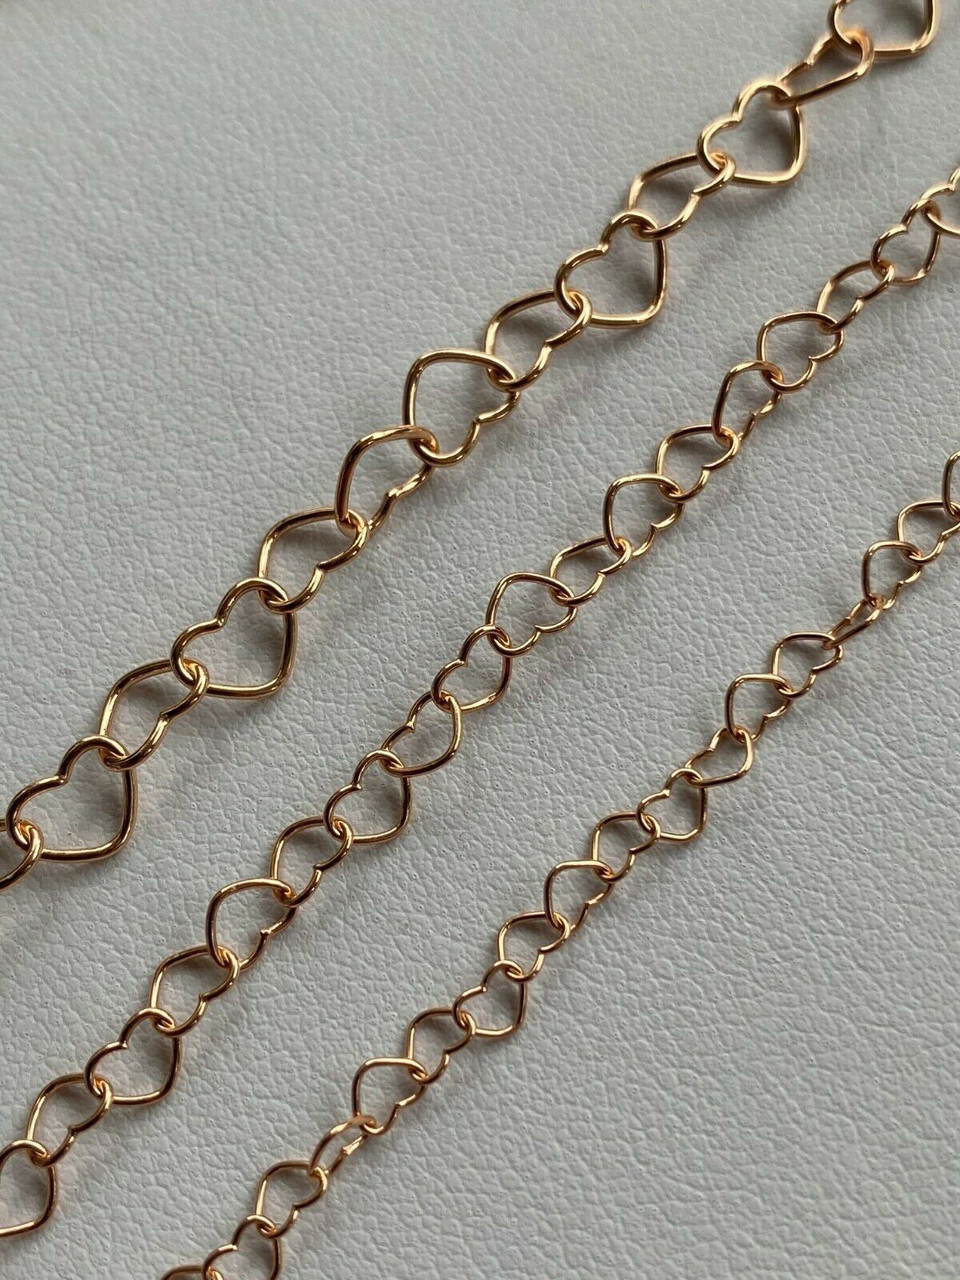 Jewelry Wire Heart Chain DIY ⋆ Dream a Little Bigger